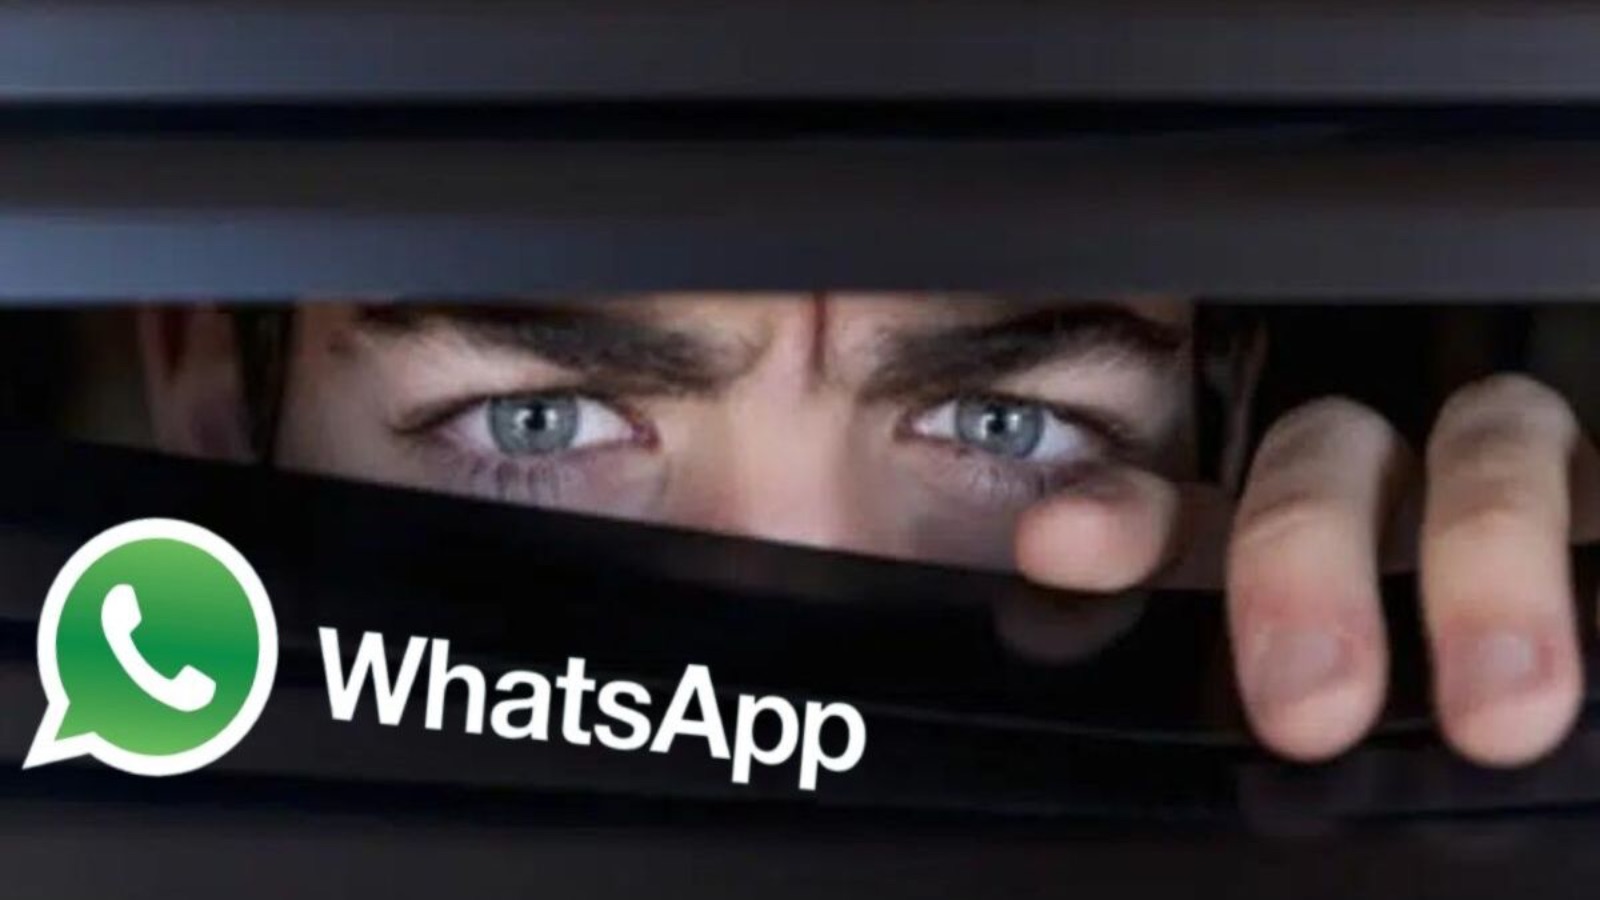 WhatsApp, come spiare gli utenti e recupera i MESSAGGI GRATIS